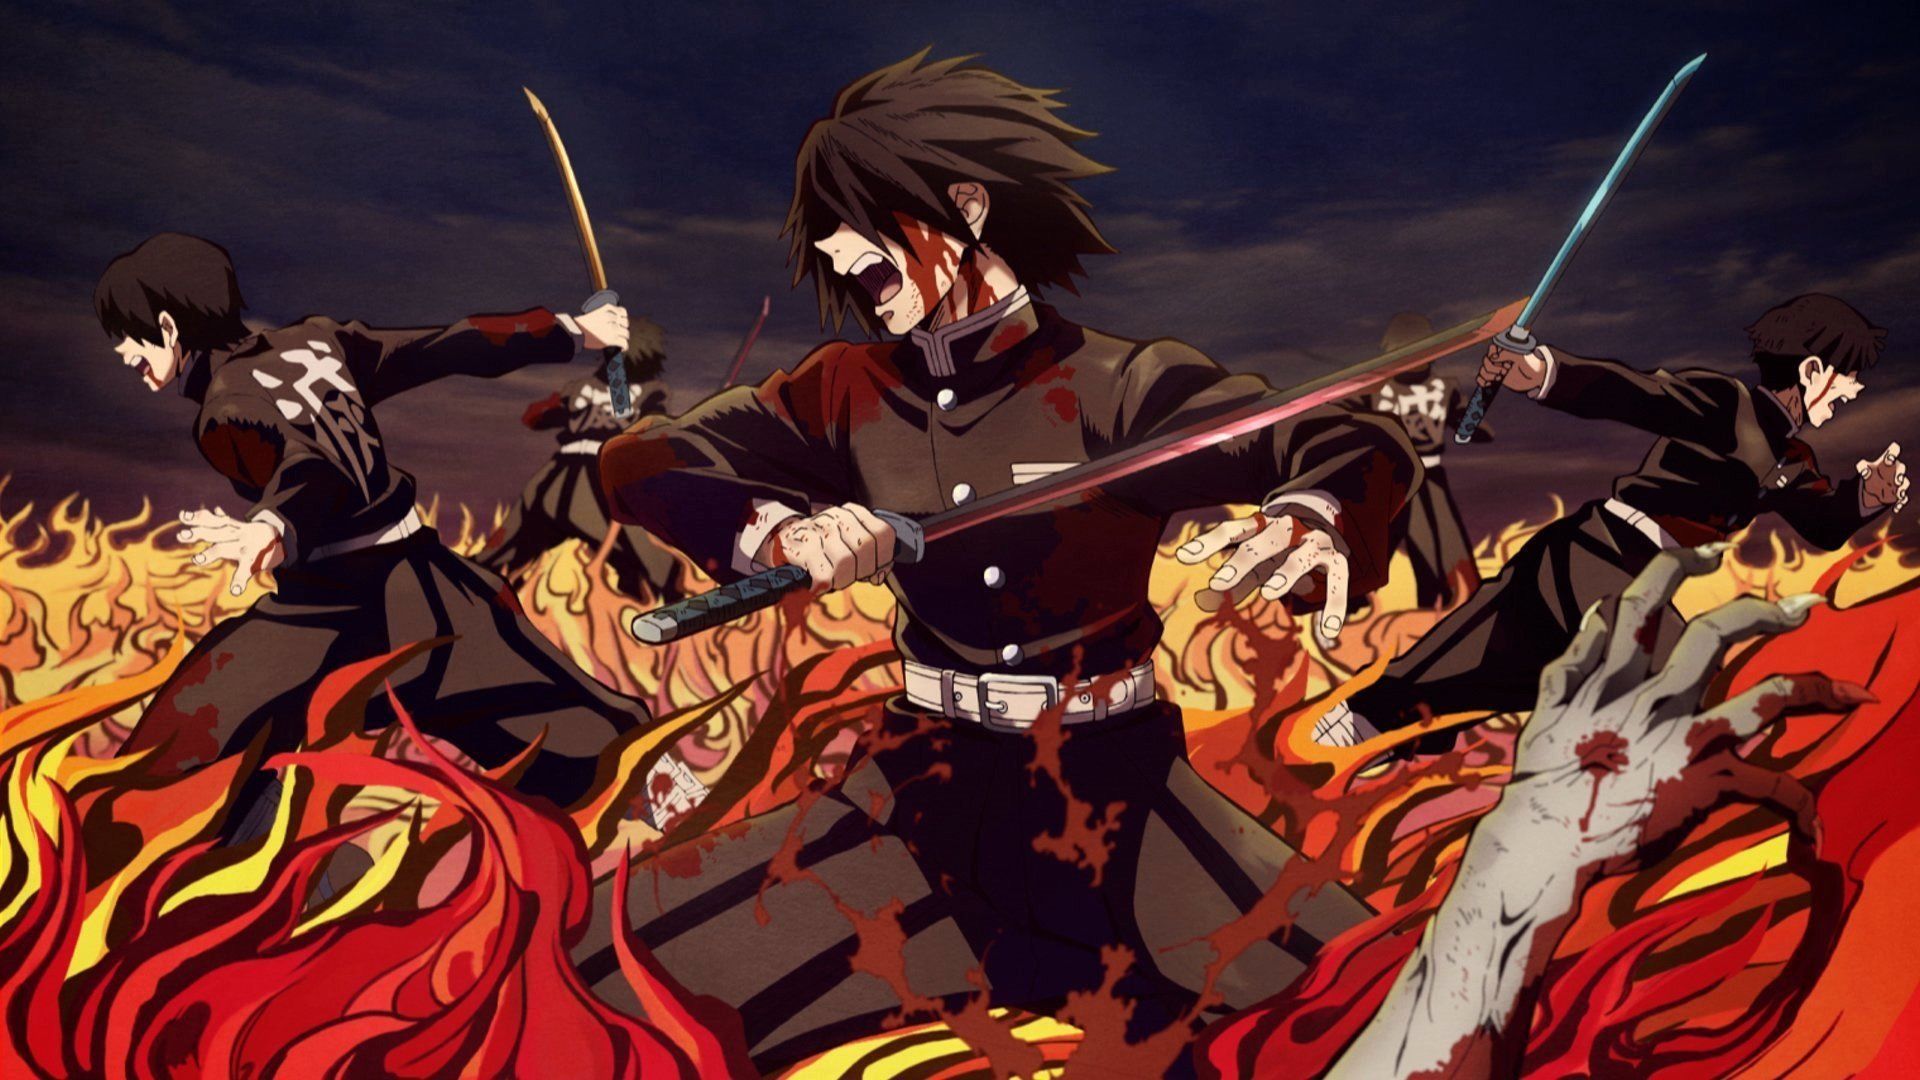 Best Demon Slayer Wallpaper image. Slayer, Demon, Anime